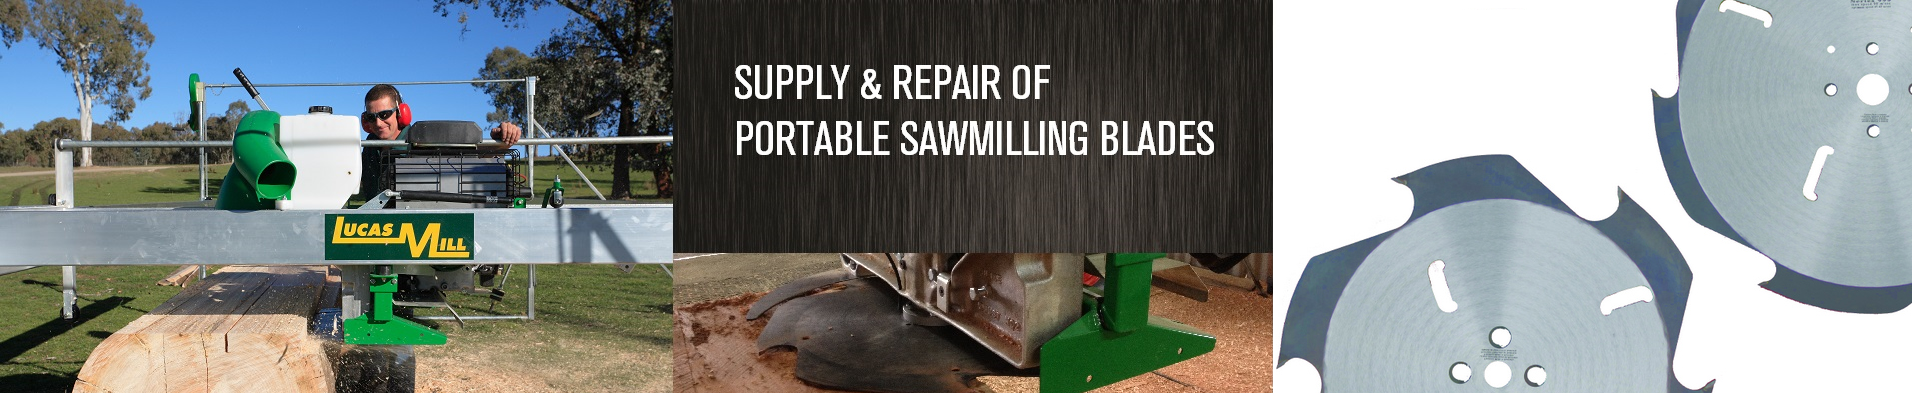 Lucas Mill - Portable Sawmill Repair